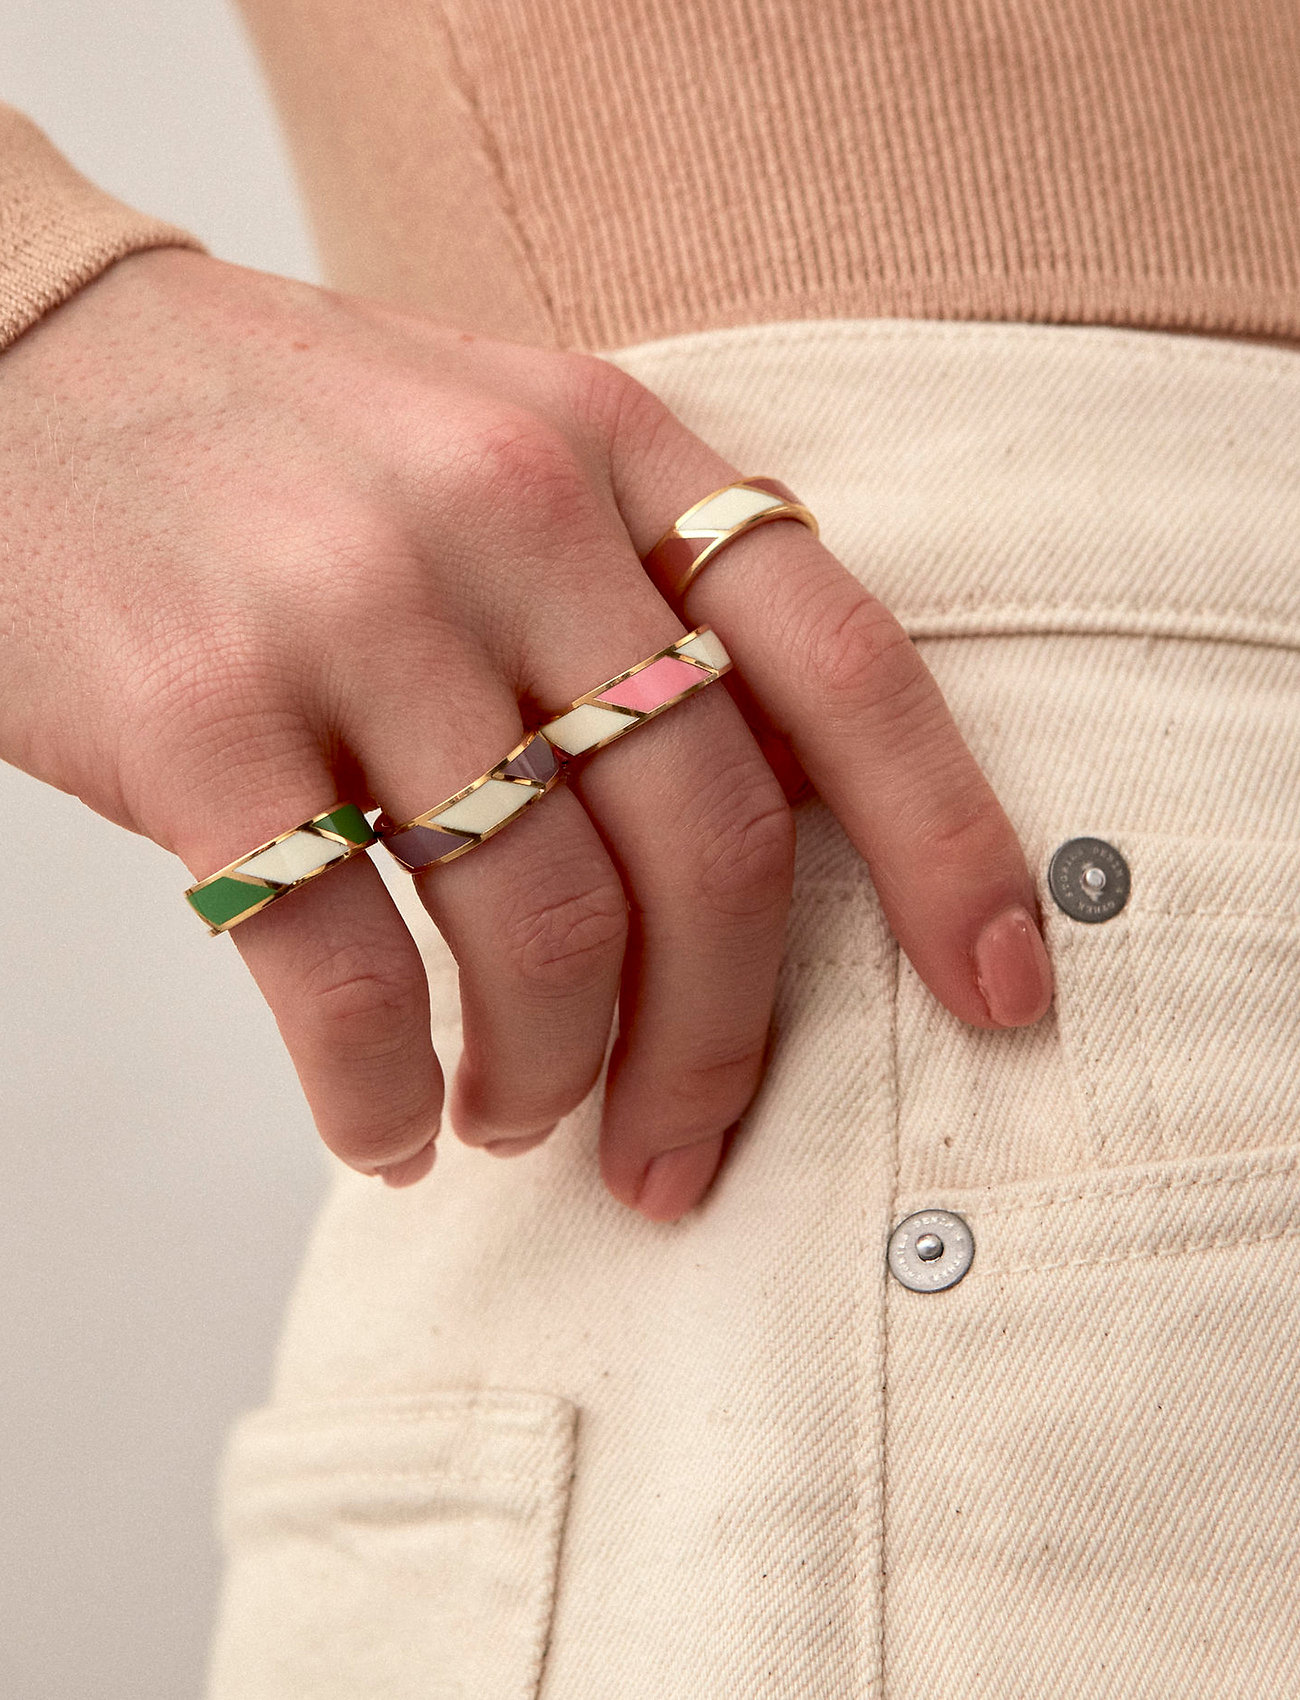 Design Letters - Striped Candy Ring - festkläder till outletpriser - dpwhite - 1